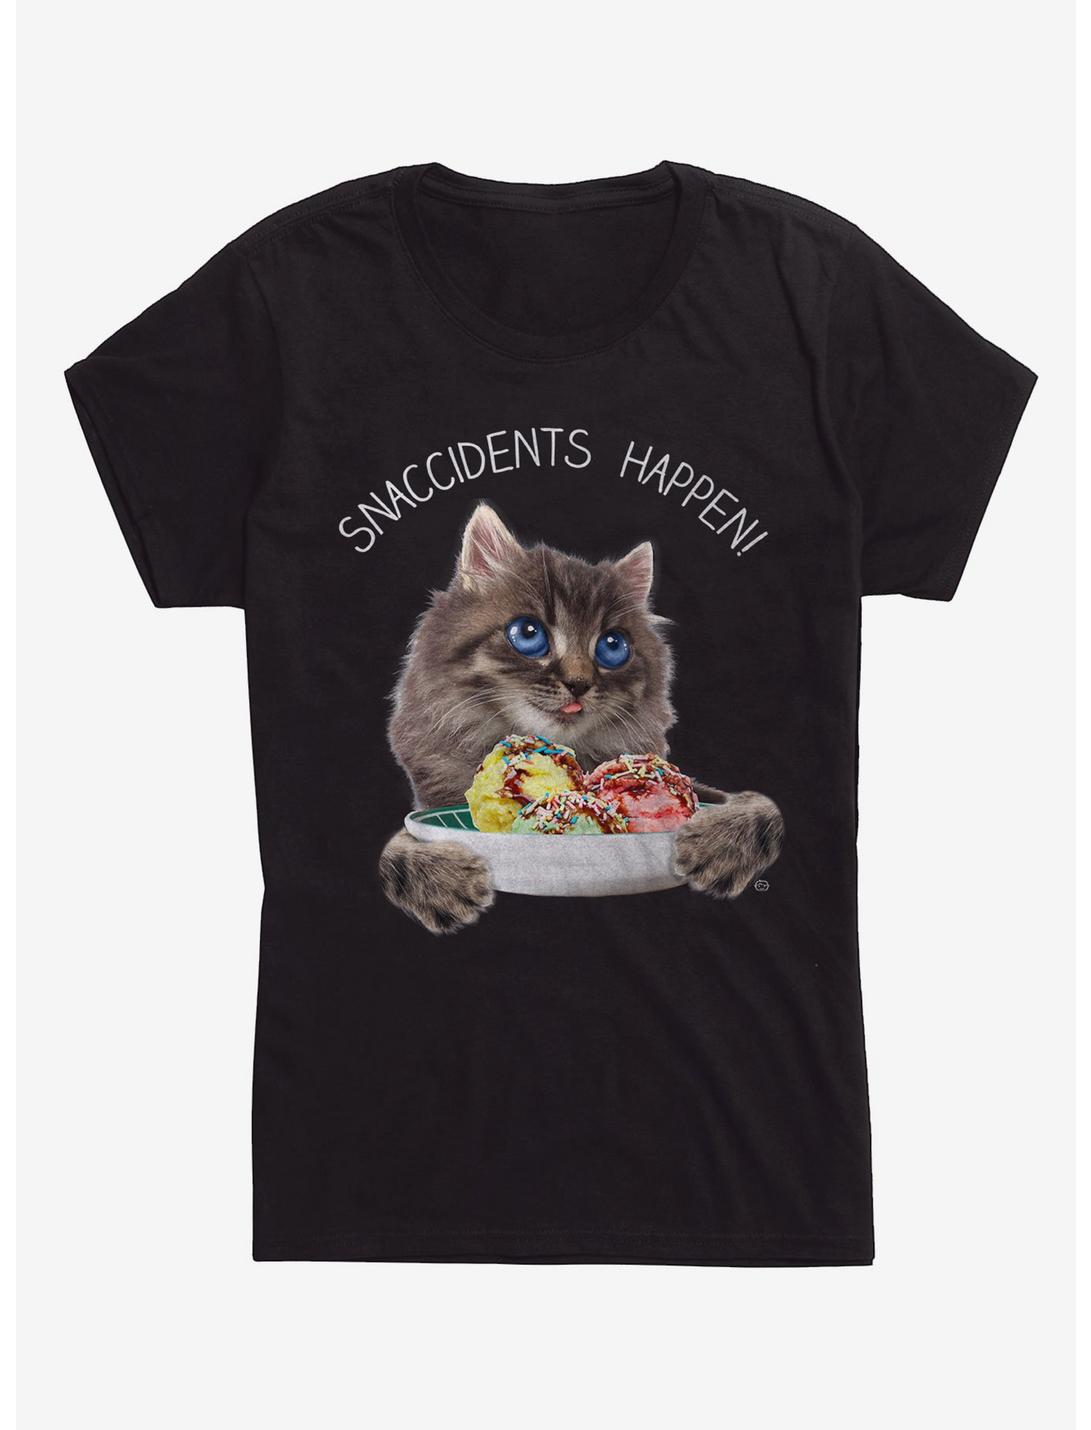 Snaccidents Happen Cat Girls T-Shirt, BLACK, hi-res